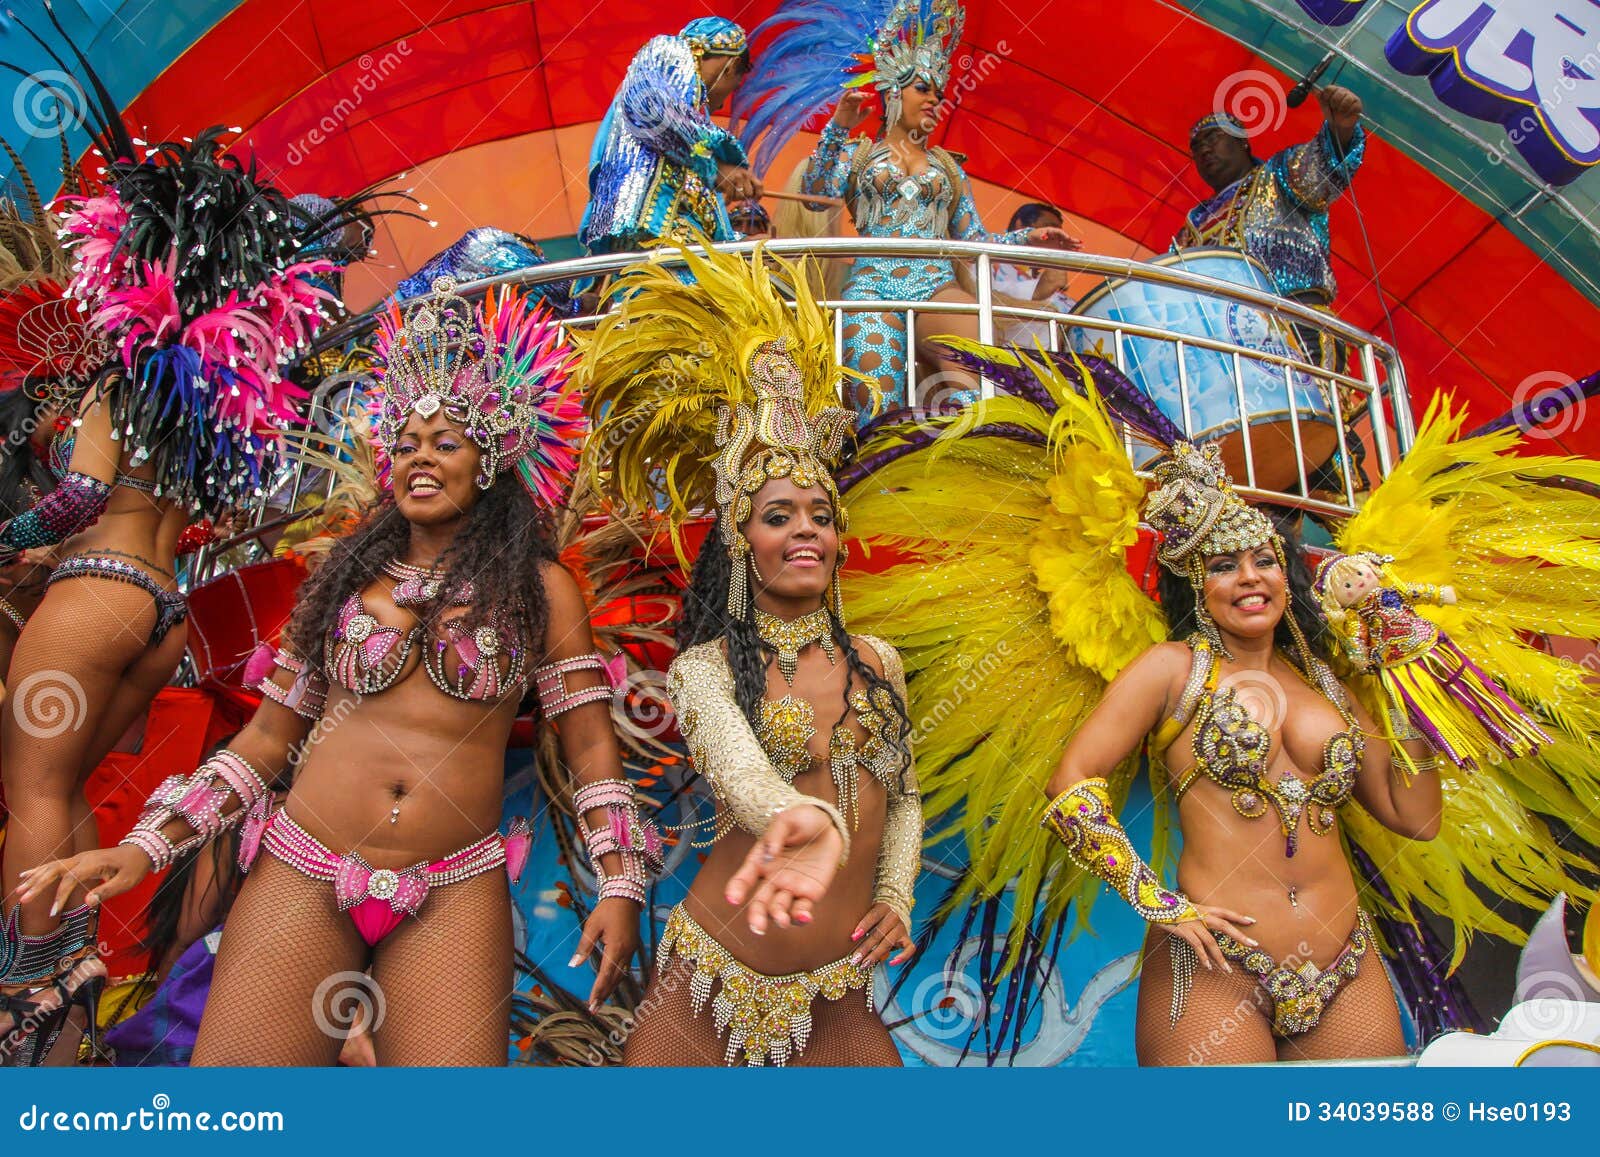 老照片 1954年巴西狂欢节 桑巴舞的世界 - 哔哩哔哩